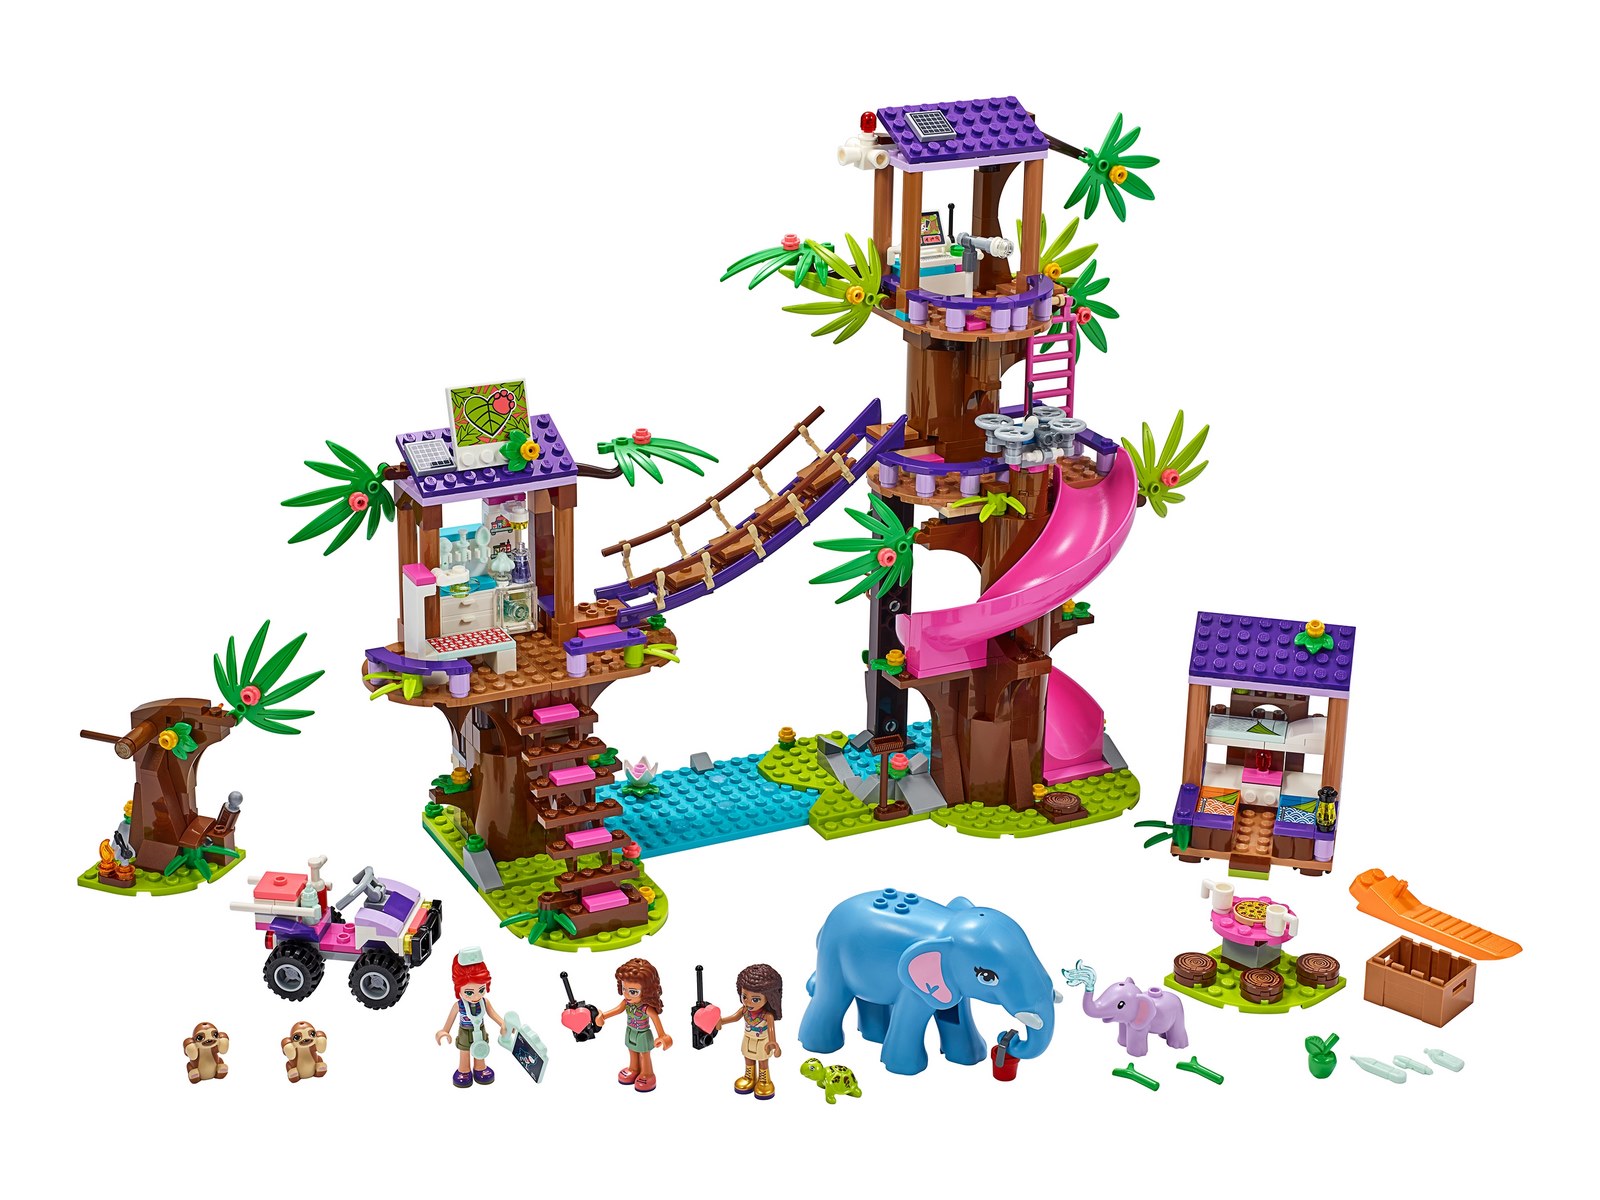 Конструктор LEGO Friends «Джунгли: штаб спасателей» 41424 / 648 деталей